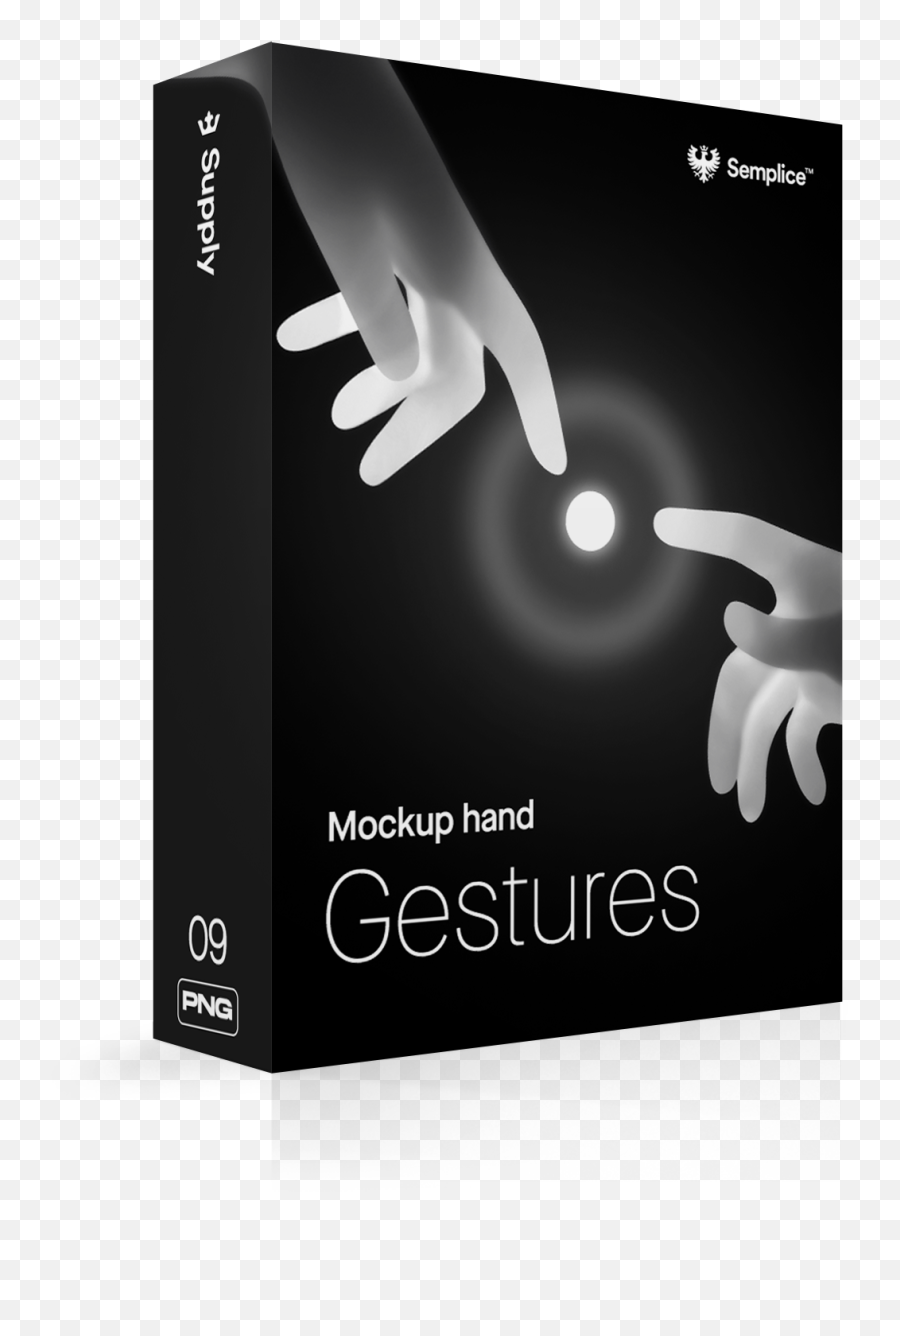 Semplice Mockup Hands For Your Designs - Graphic Design Emoji,Hands Showing Emotion